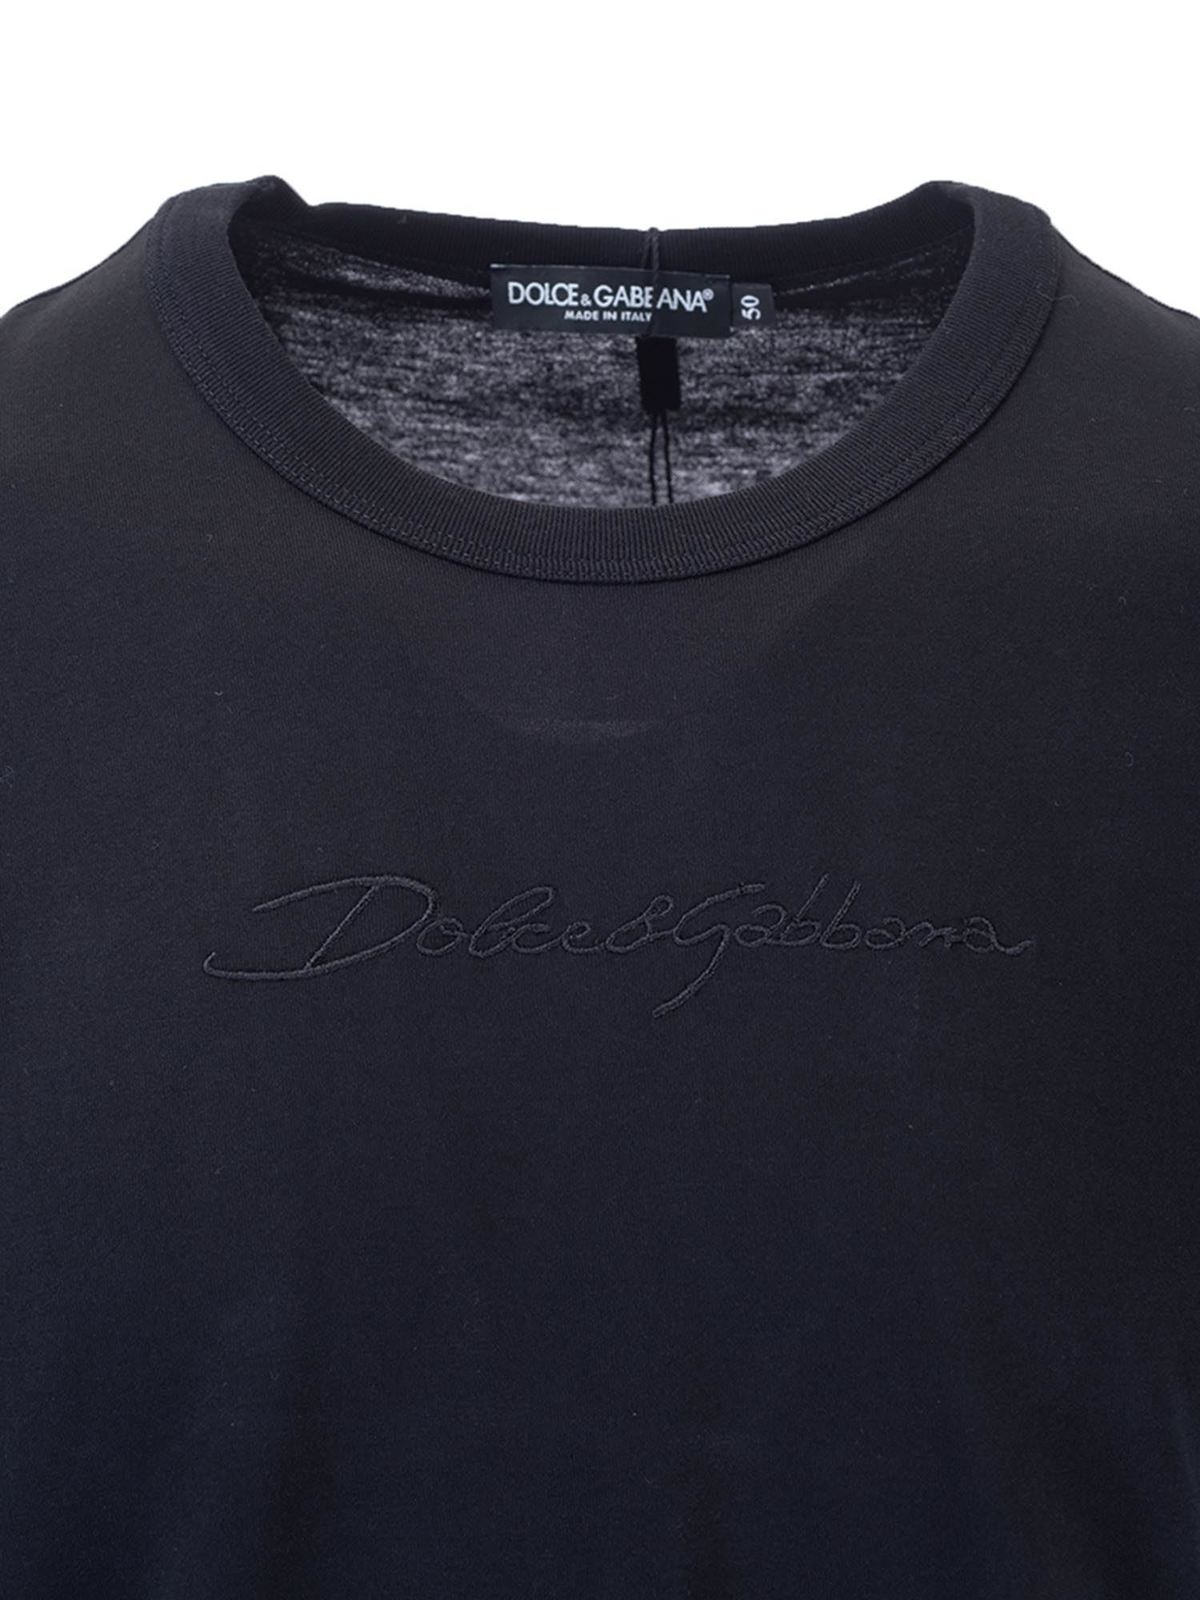 Dolce \u0026 Gabbana - Basic T-shirt in 